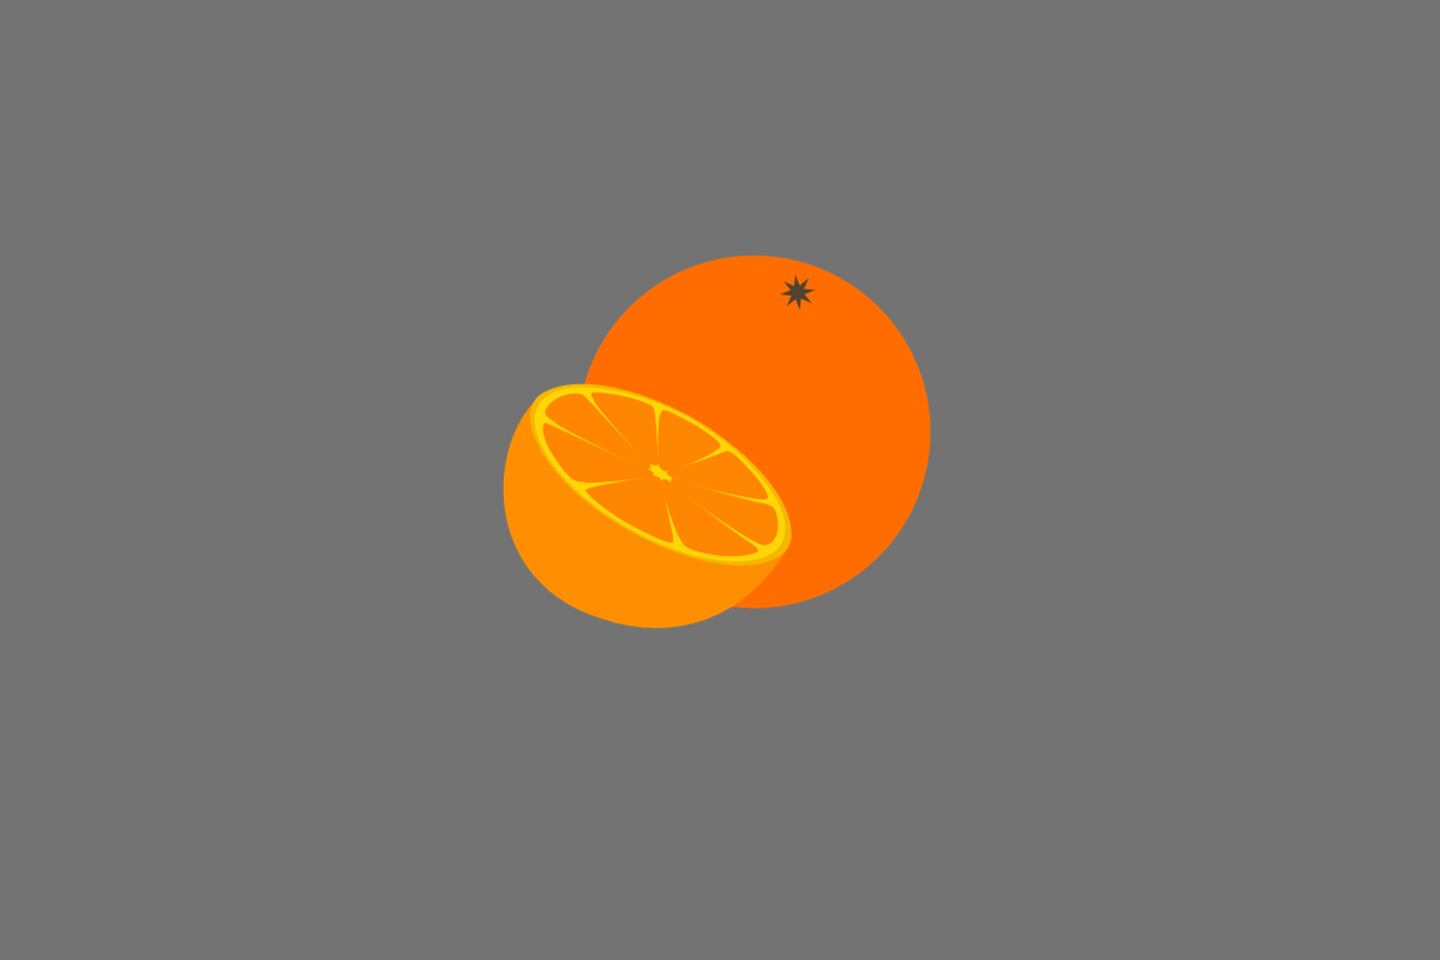 En este test visual se ve una naranja, que era la fruta escondida detrás de la canasta.